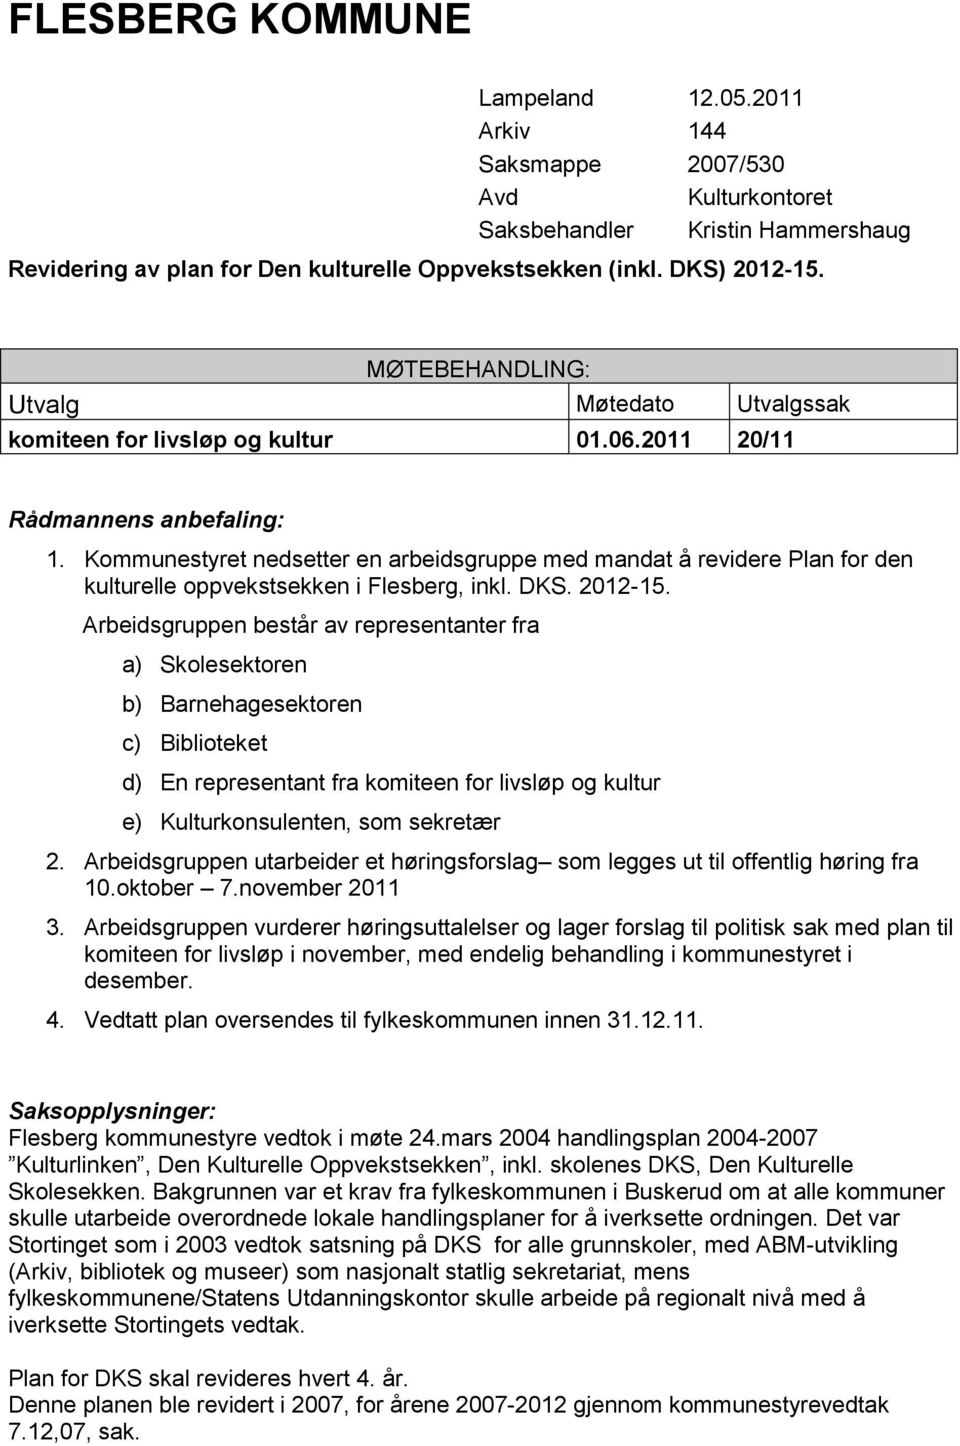 Kommunestyret nedsetter en arbeidsgruppe med mandat å revidere Plan for den kulturelle oppvekstsekken i Flesberg, inkl. DKS. 2012-15.